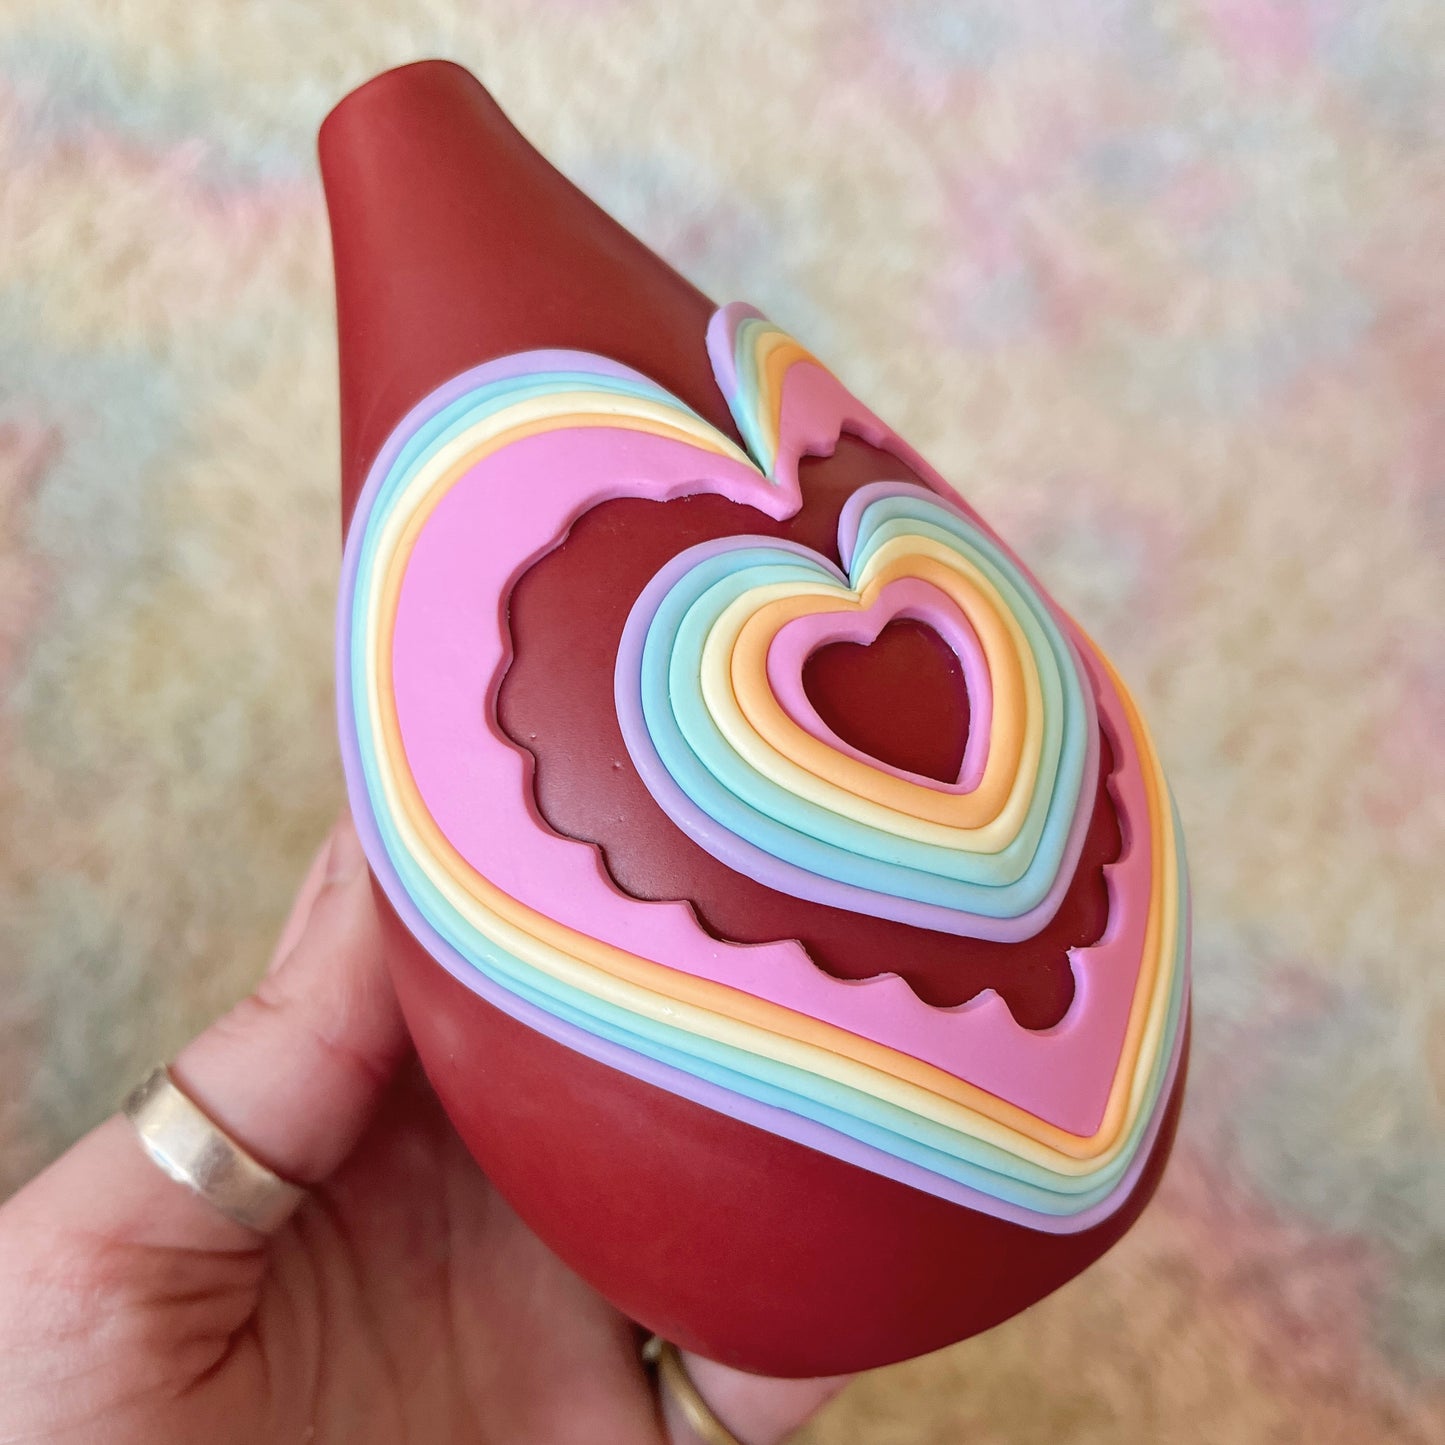 Pastel rainbow scalloped love-heart vase